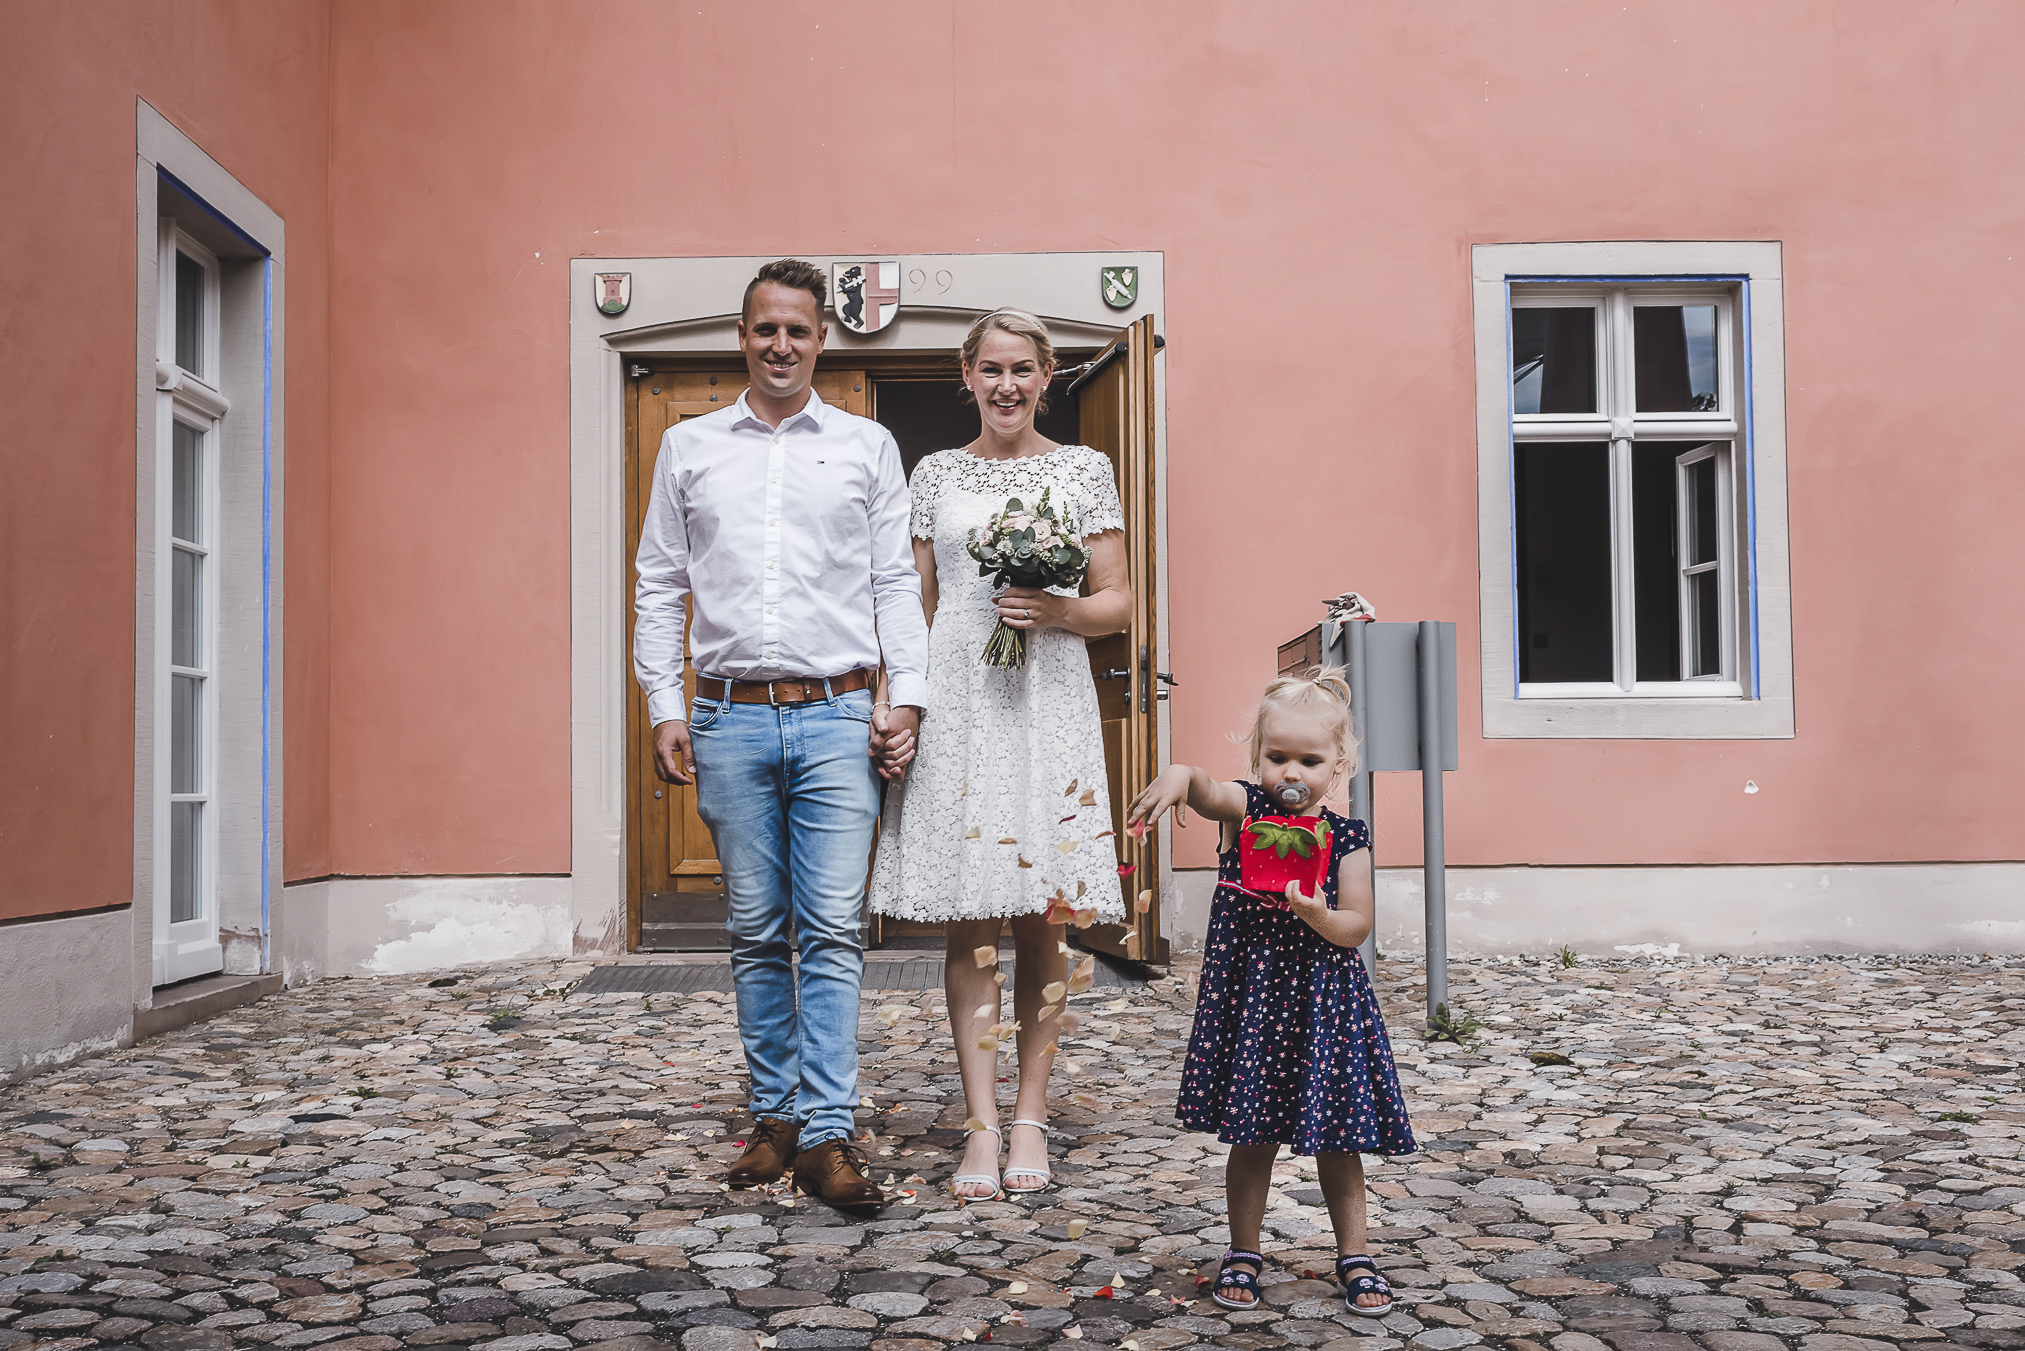 Das Brautpaar verlässt das Standesamt in Kirchzarten und wird von der Tochter mit Rosenblättern beschenkt. Hochzeitsfotografin Isabela Campos hält diesen wunderbaren Augenblick für die Ewigkeit fest.